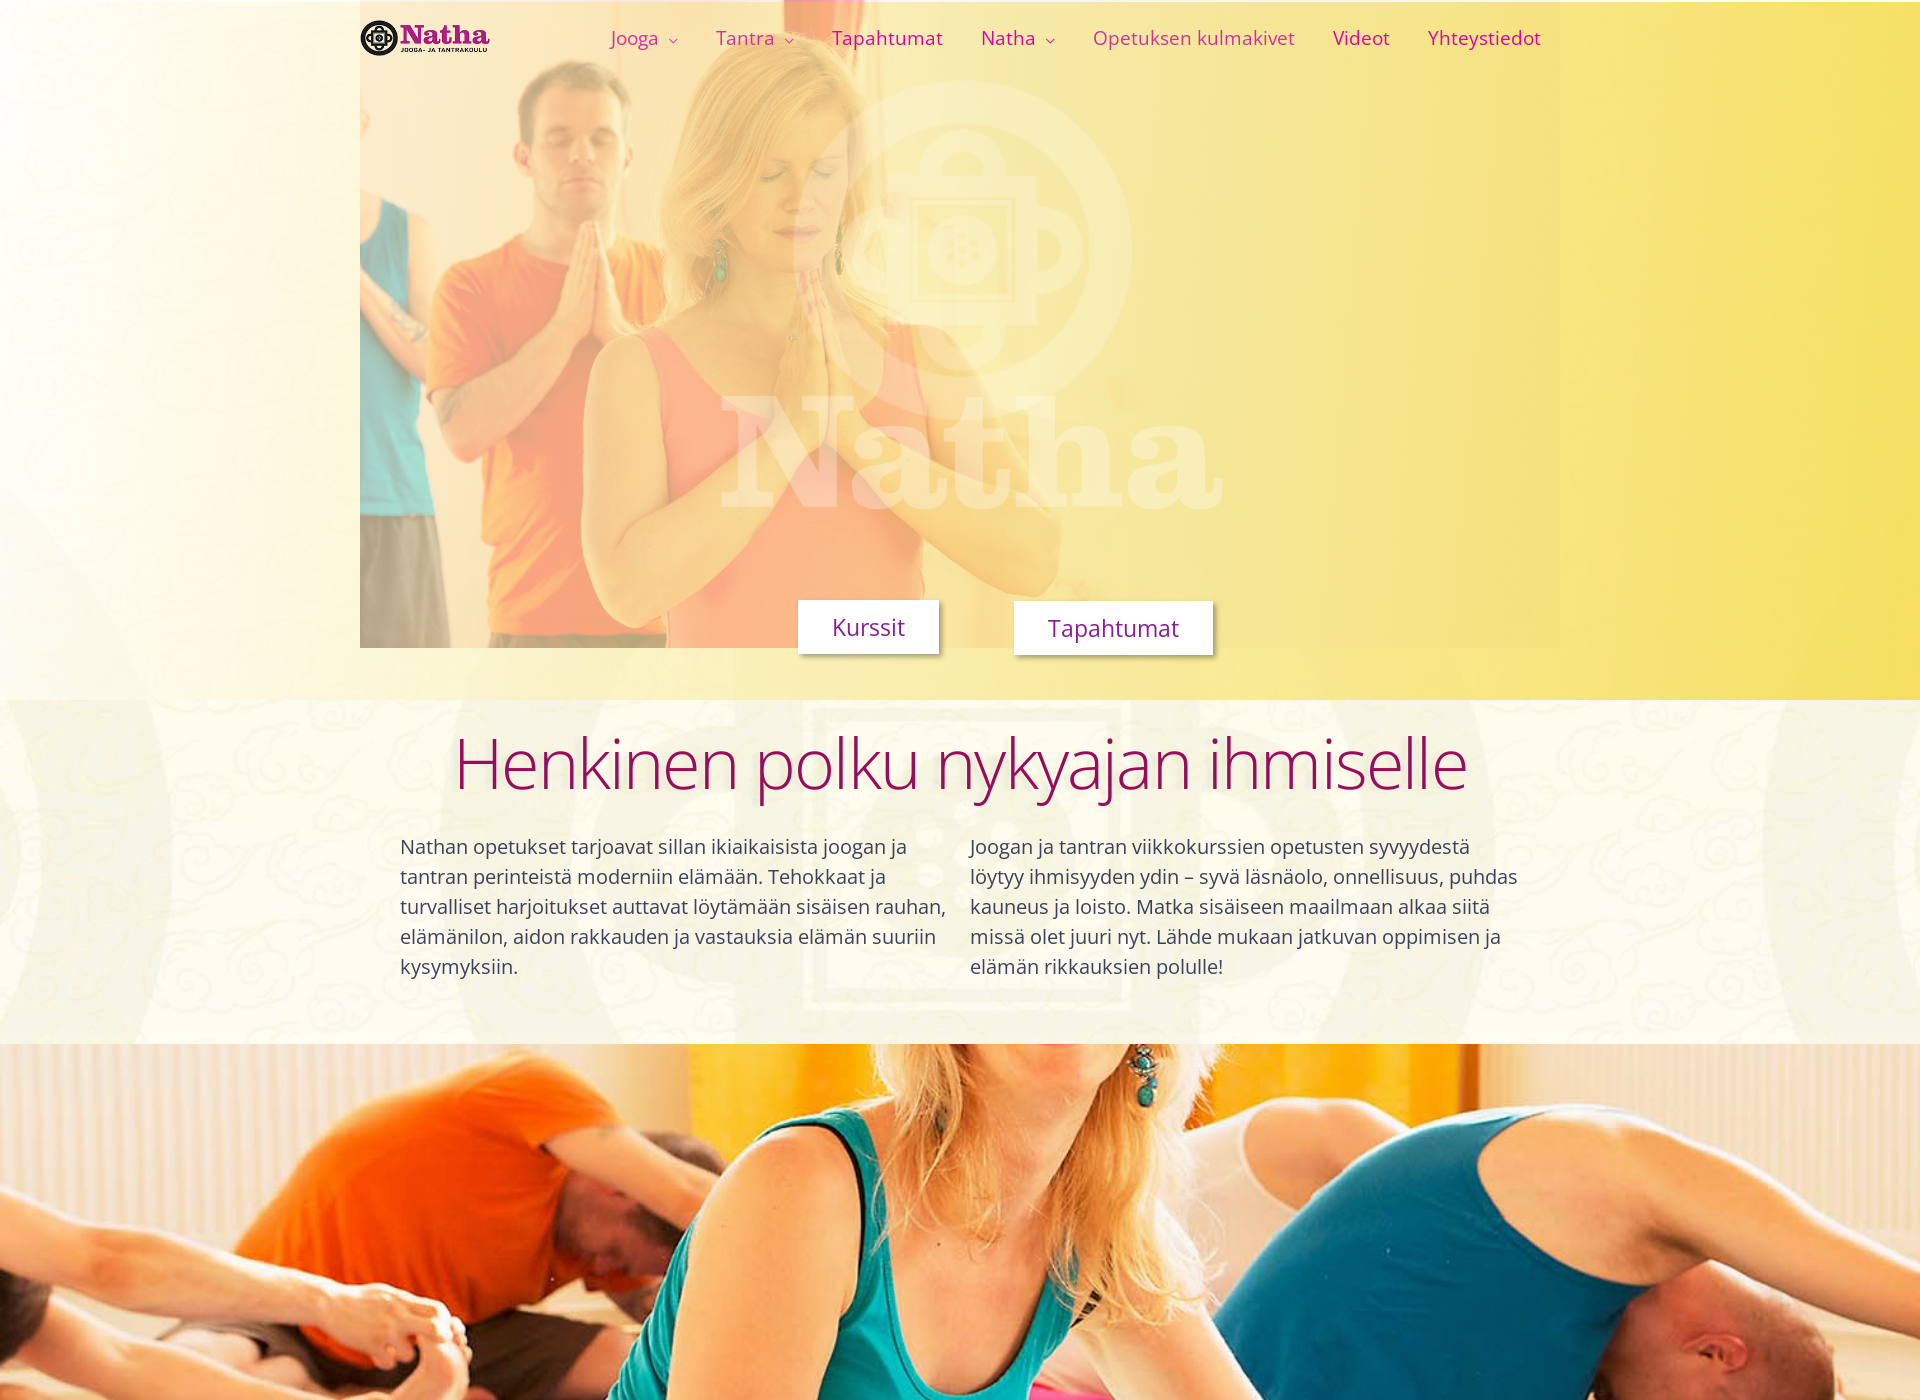 Näyttökuva natha.fi